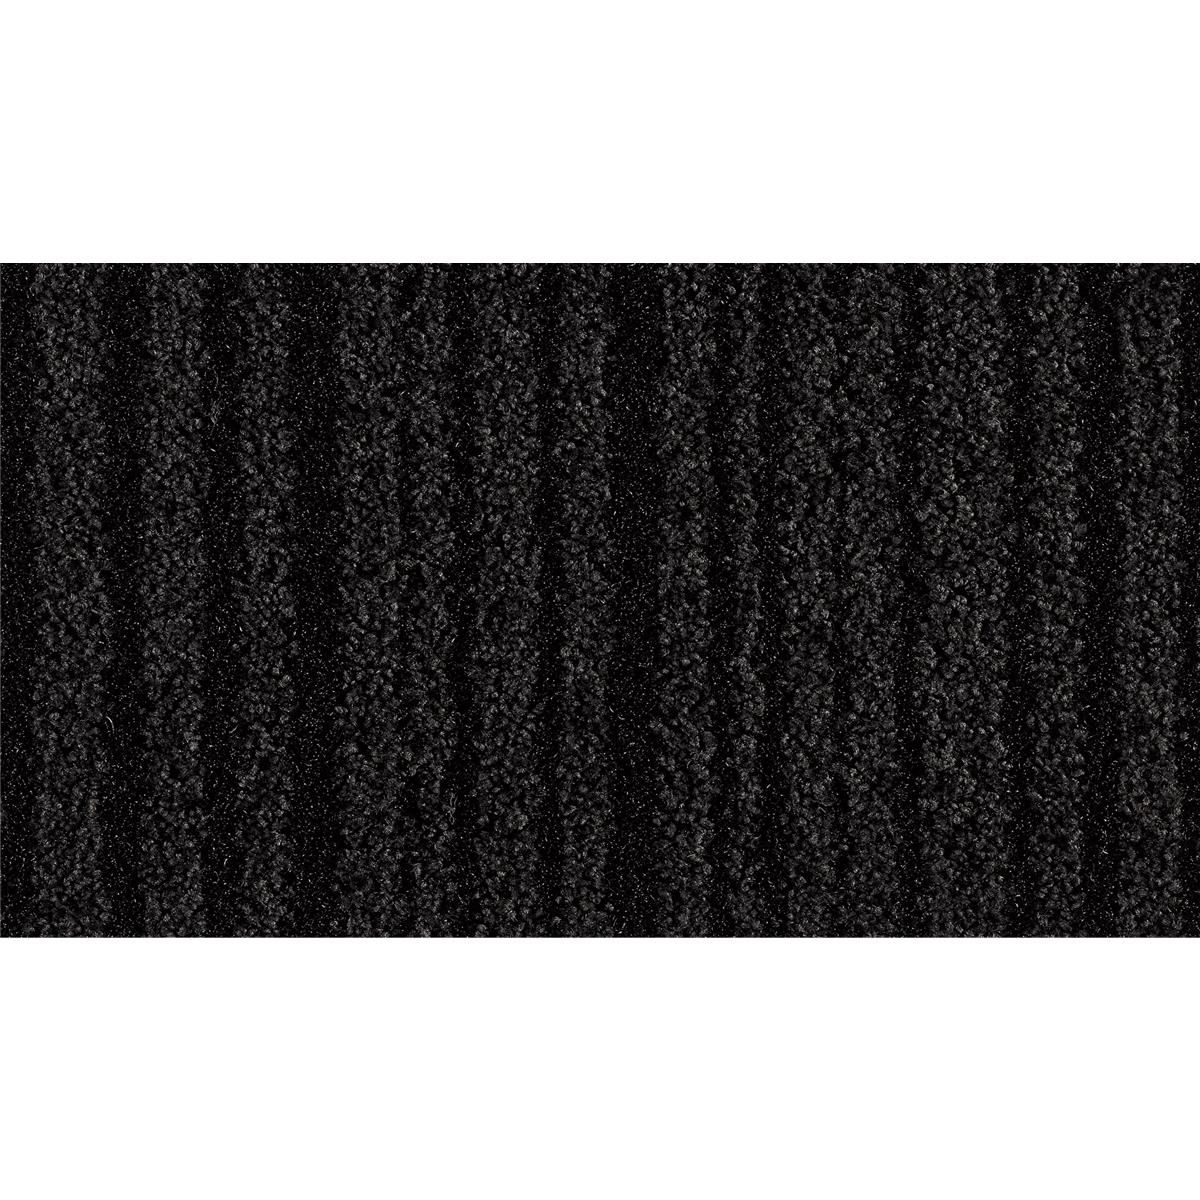 Sauberlauf Schwarz 40.11 mit Rand - Rollenbreite 200 cm